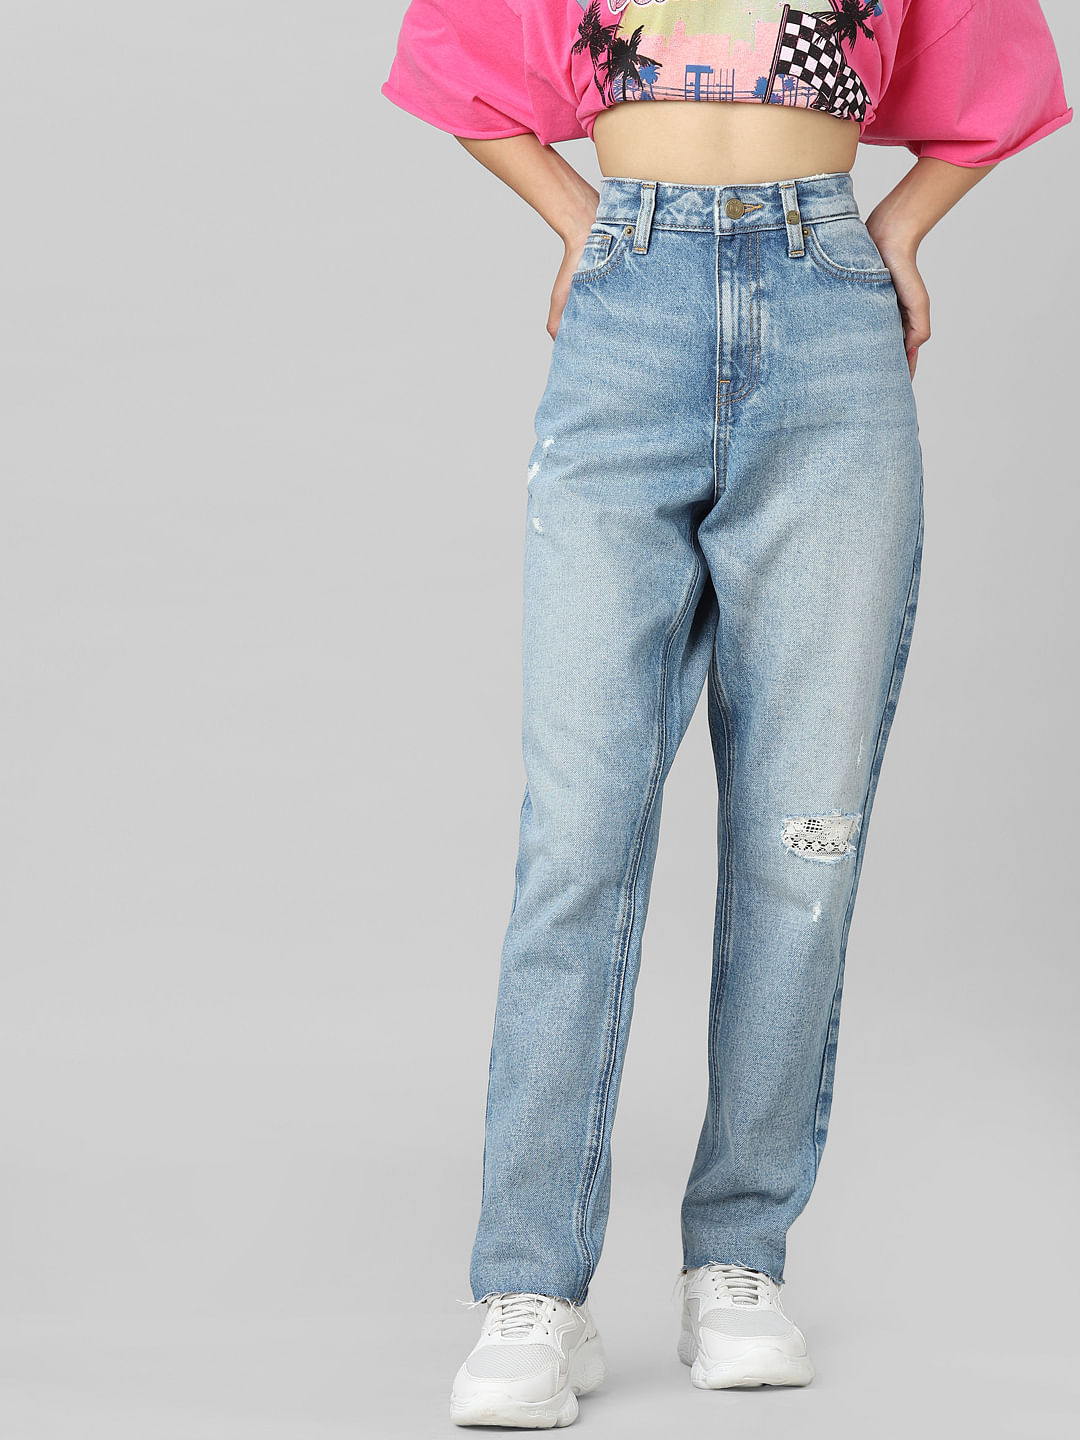 Buy NEON 9 Girls Boyfriend Loose Fit Denim Jeans Girls Jeans  Jeans  Denim  Jeans  Online at Best Prices in India  JioMart